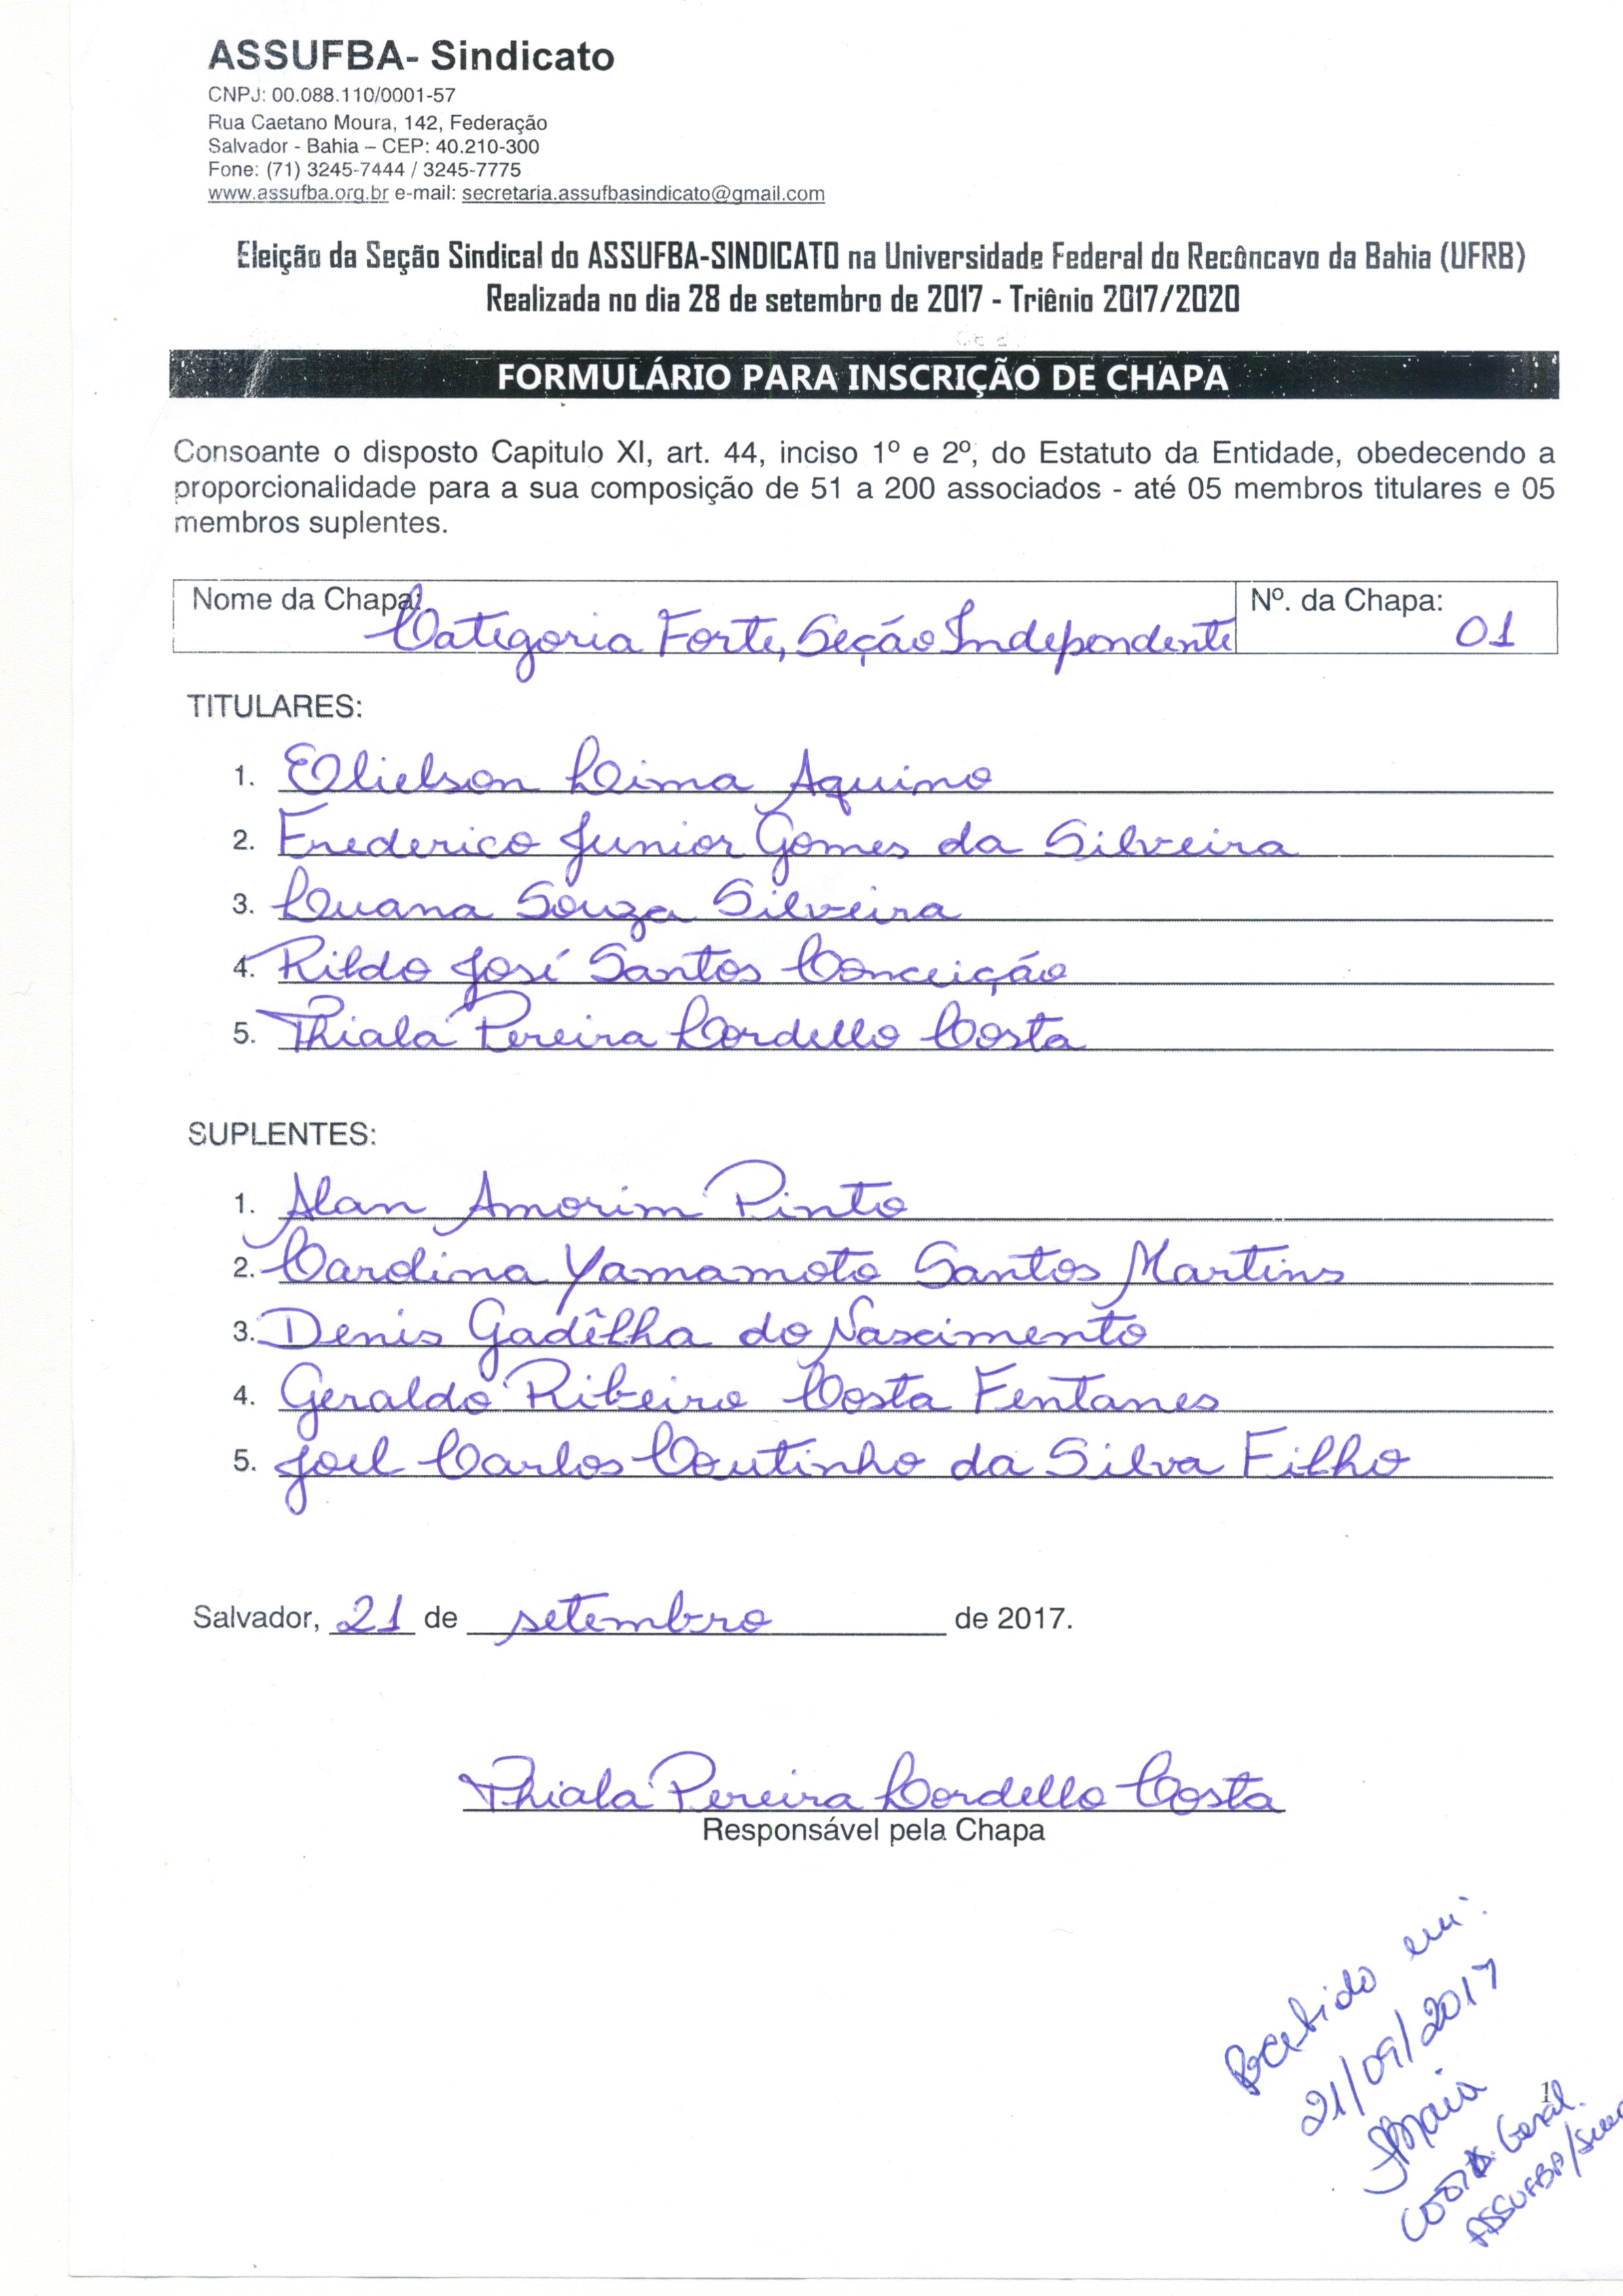 Formulário de Inscrição da Chapa 1 - Eleição Seção UFRB